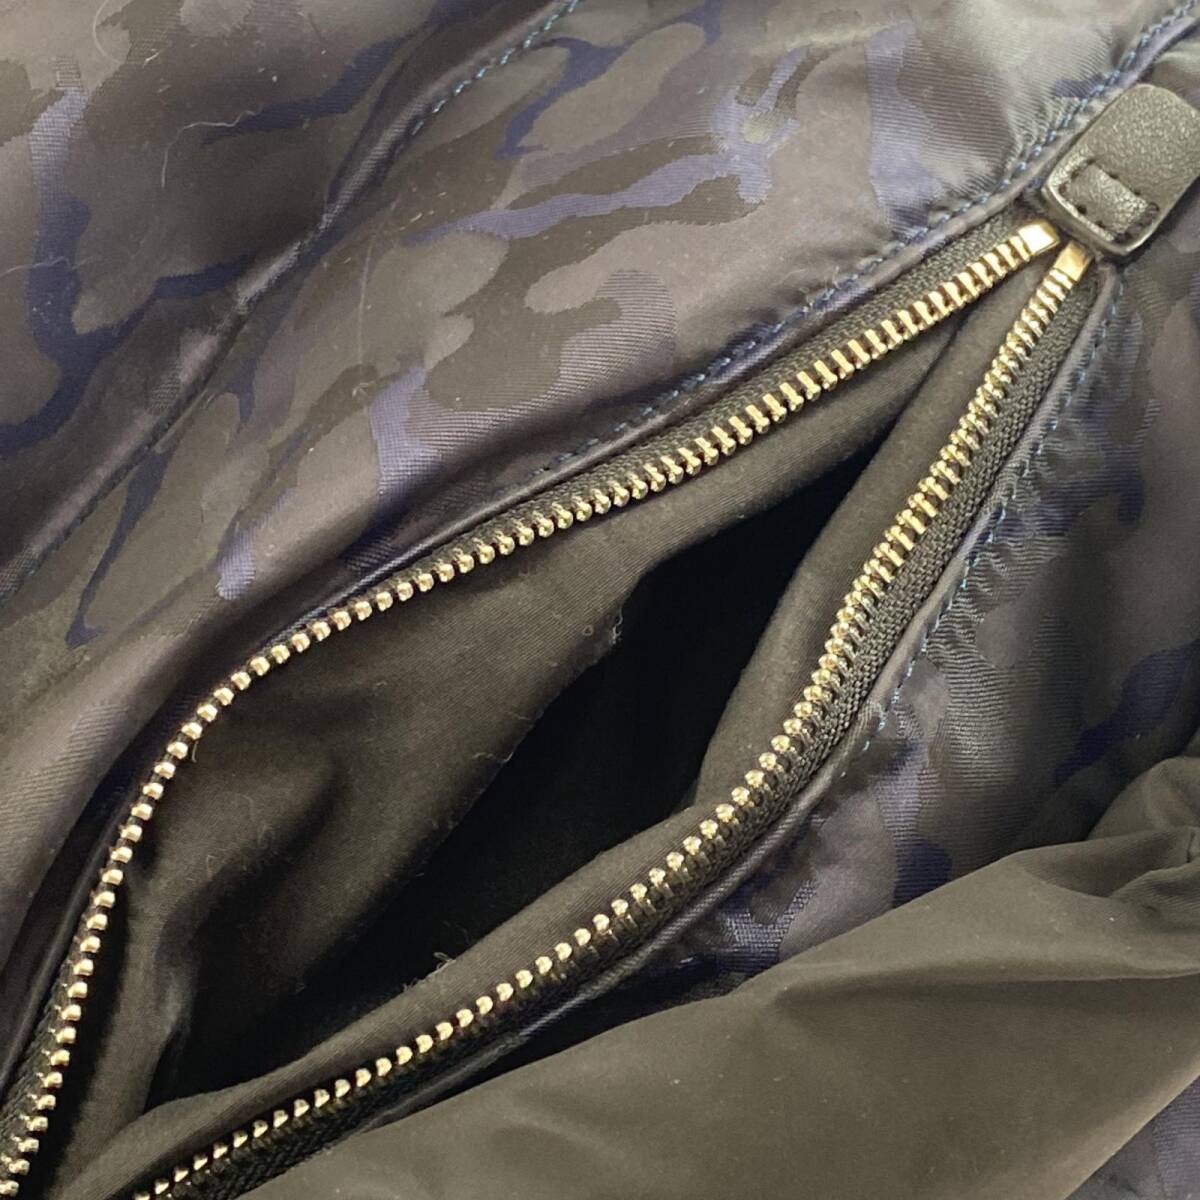 INDIVI Indivi 2WAY camouflage pattern shoulder bag / navy × black lady's 